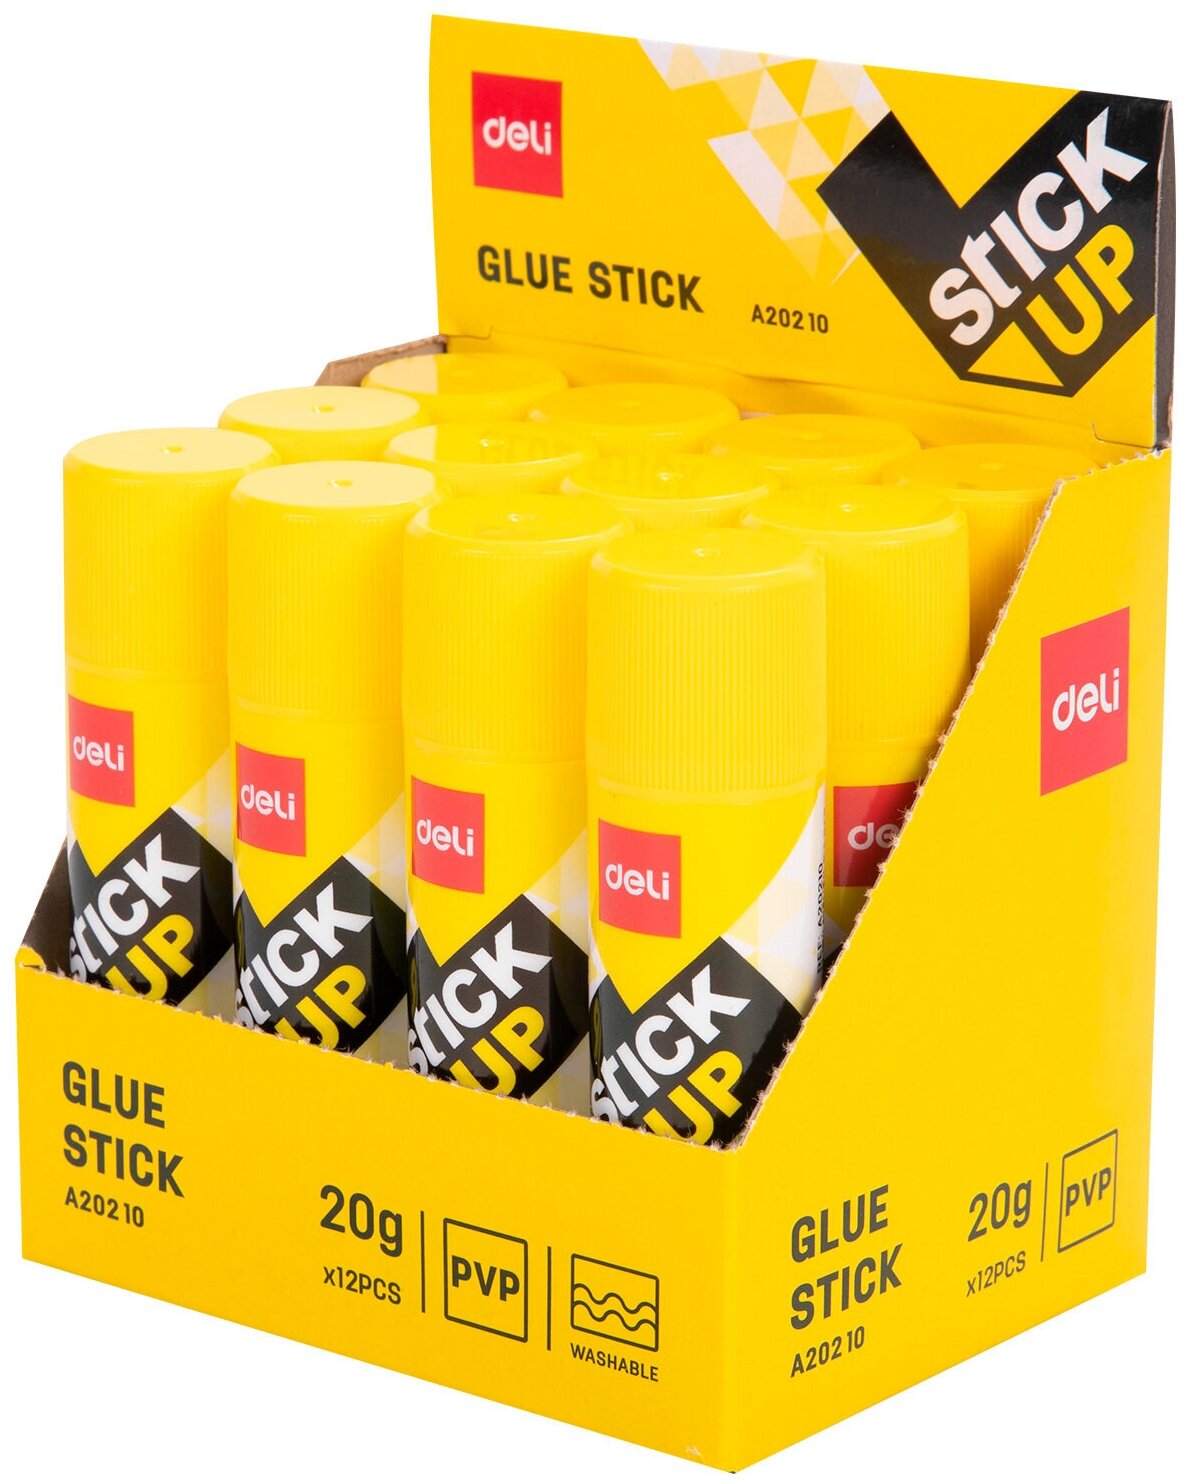 Клей-карандаш Deli Stick UP 20гр корп.желтый прозрачный дисплей картонный усиленный - фото №2